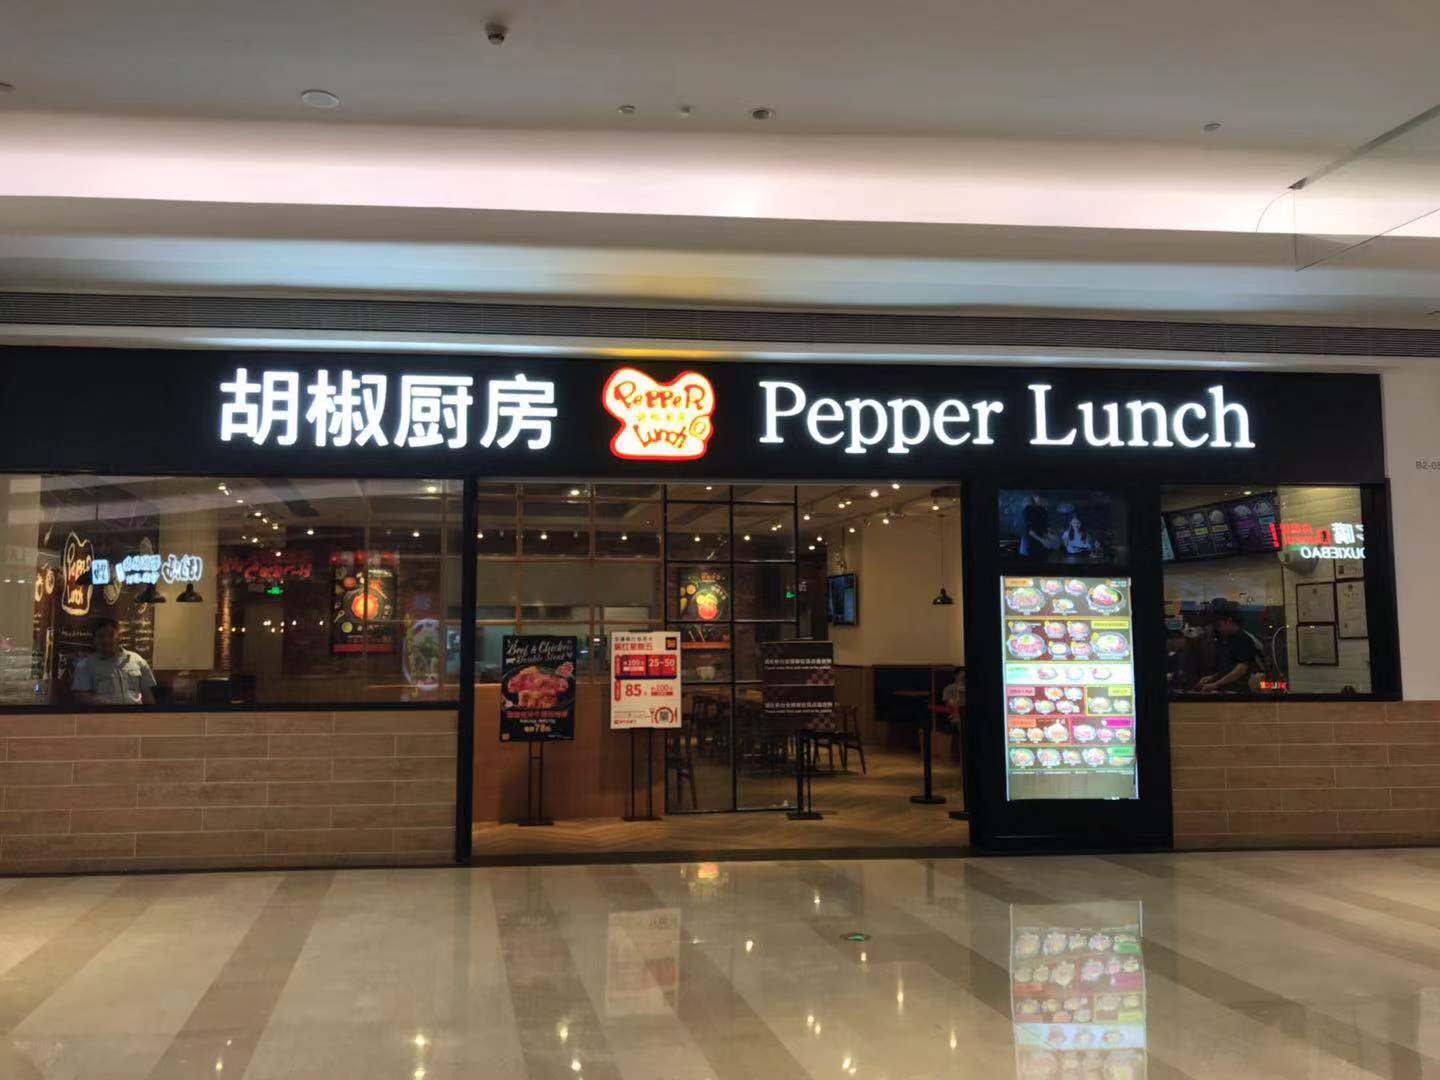 Pepper Lunch (Shenzhen Uniwalk Shop)